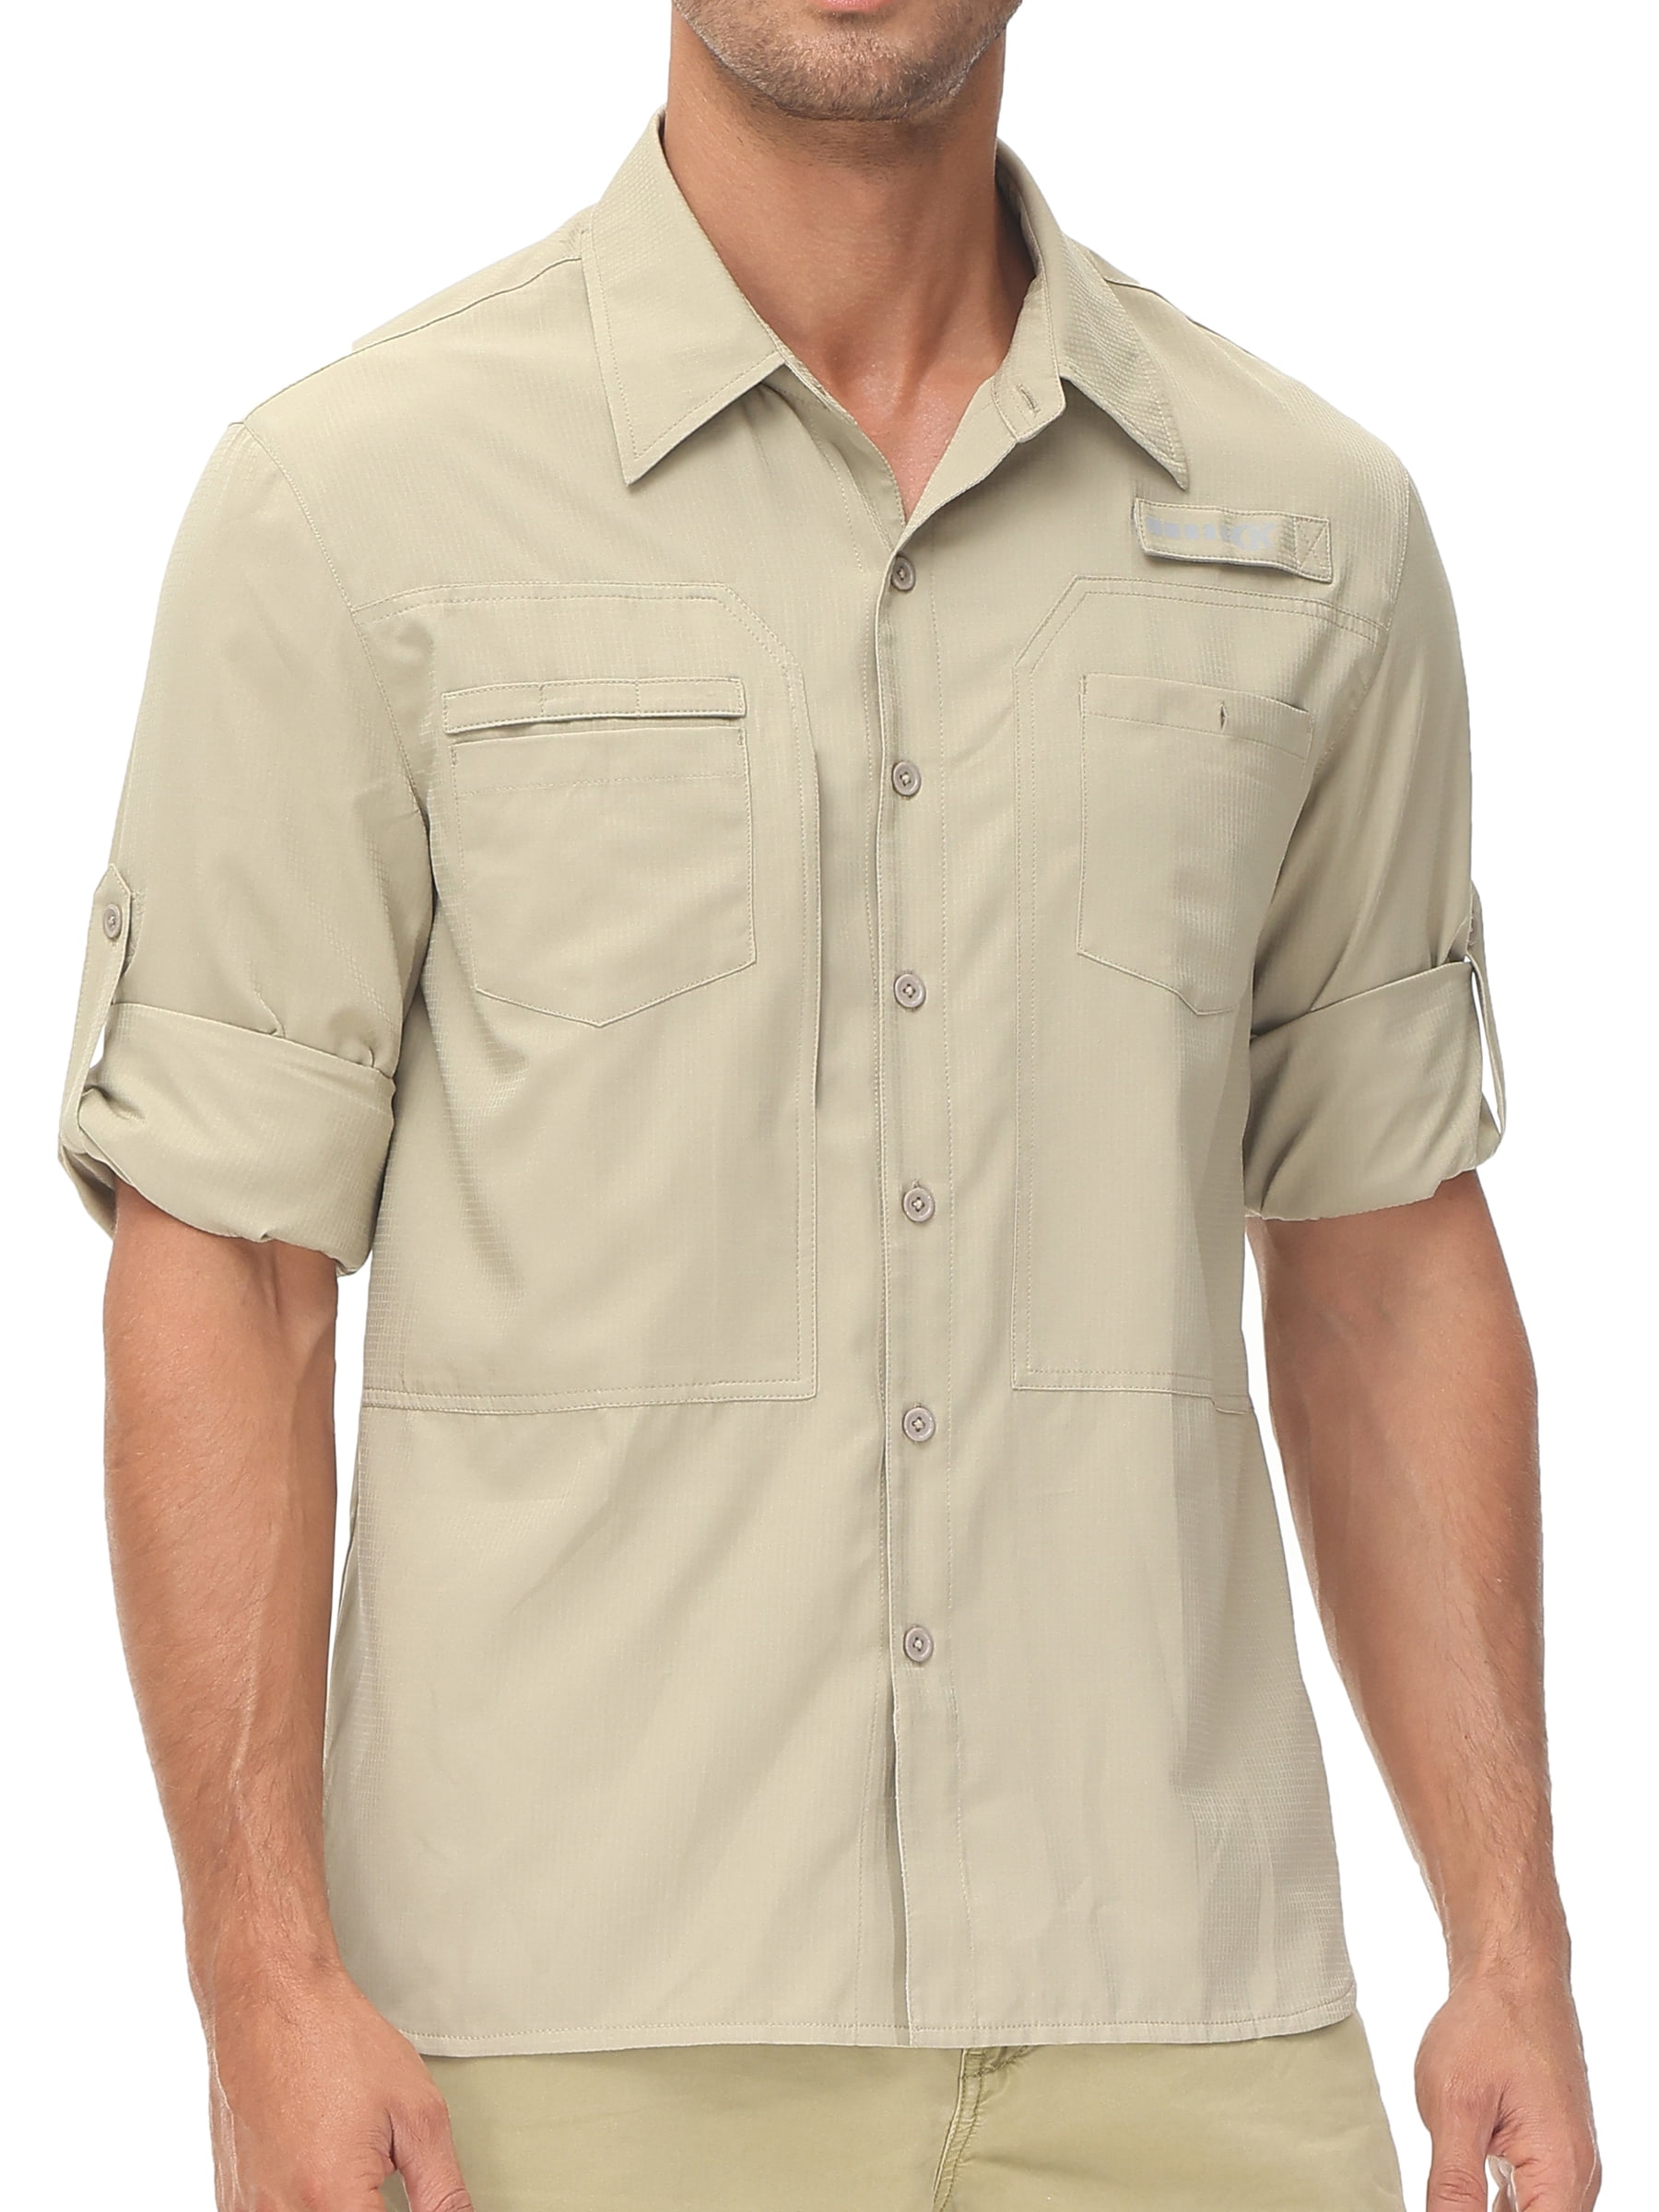 Kyodan Outdoor Mock Collar Zipper Pocket Shirt - Long Sleeve - Save 62%